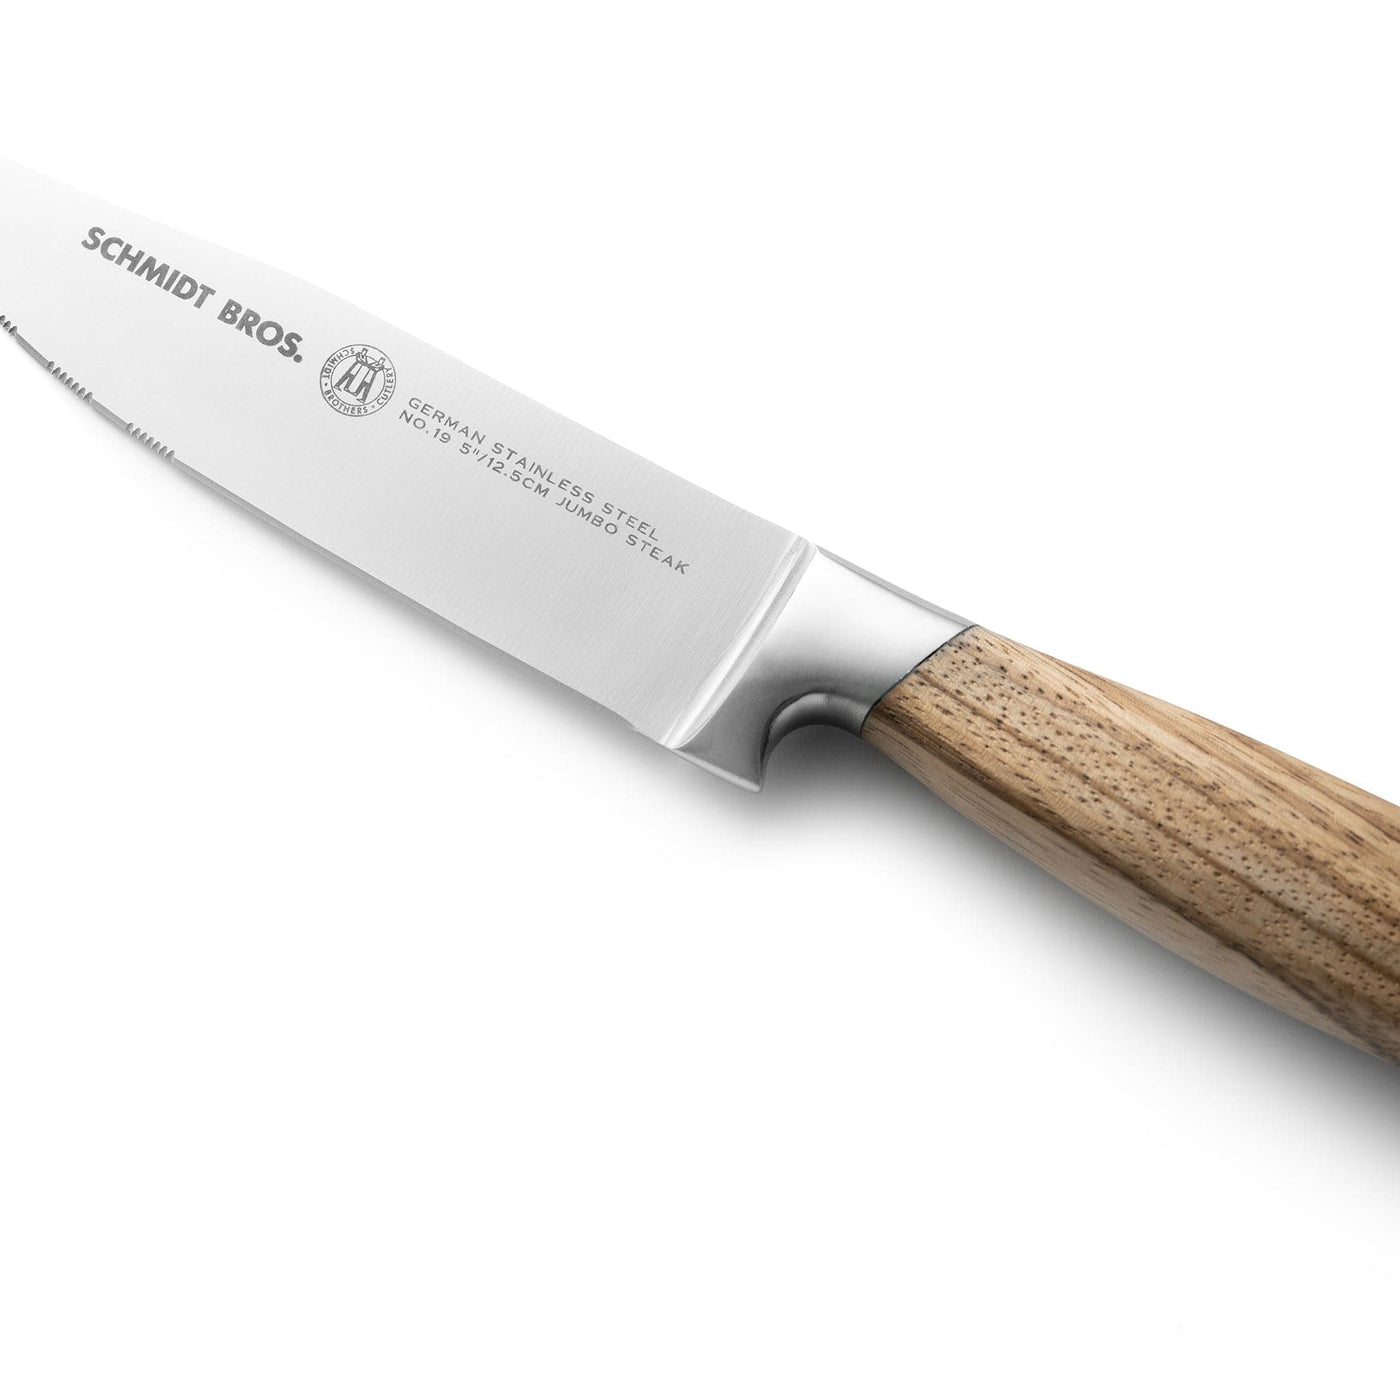 Koch Systeme By Carl Schmidt Sohn 4 Piece Stainless Steel Steak Knife Set